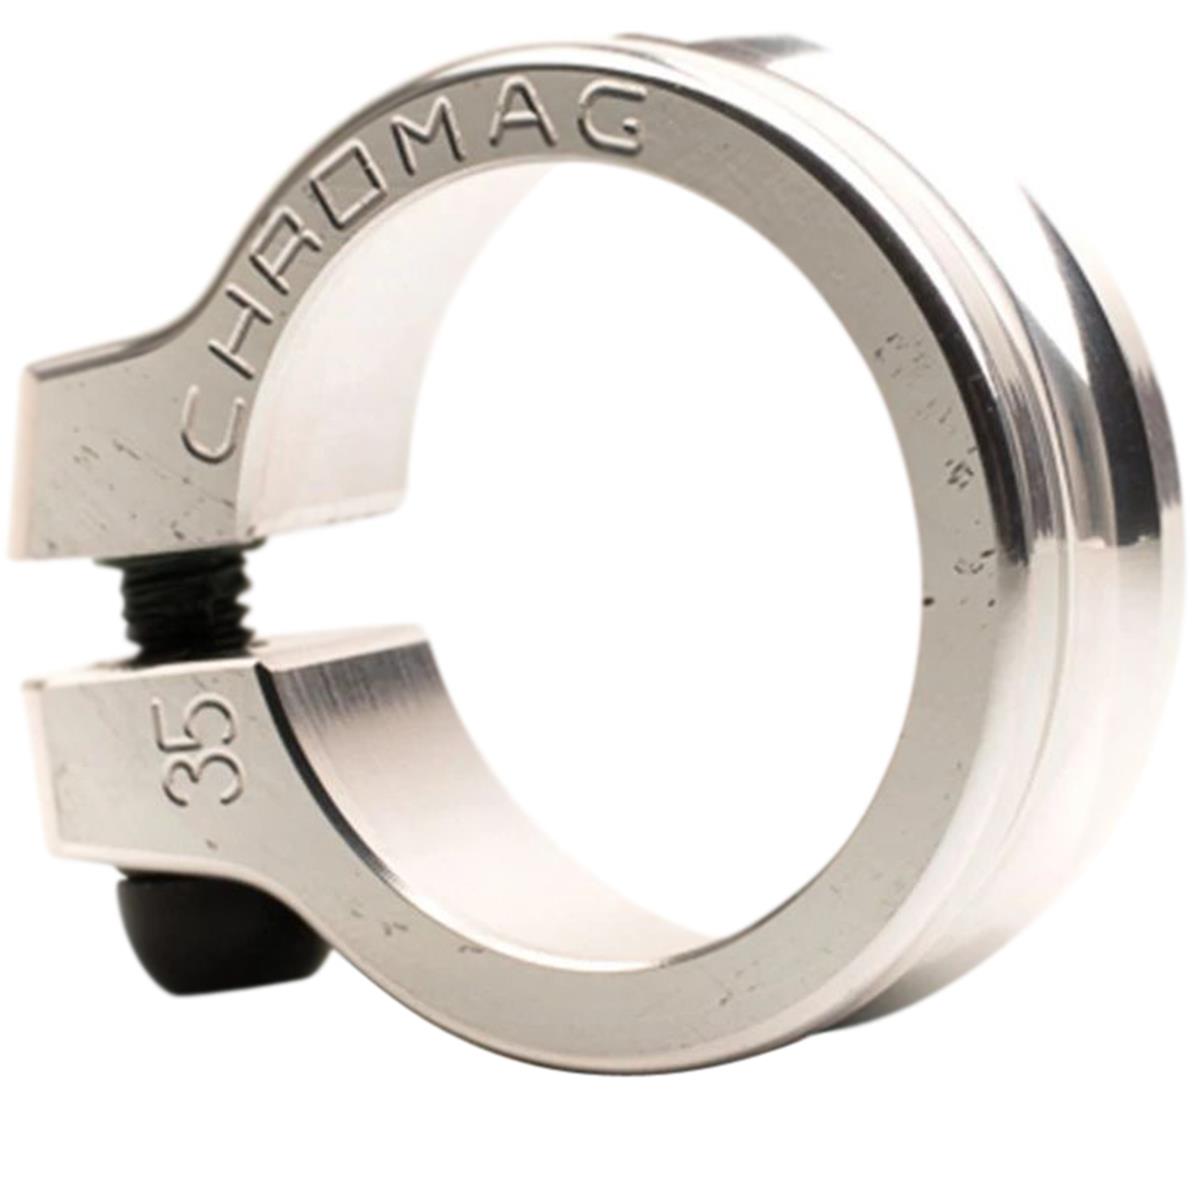 Chromag Collarino Reggisella NQR 36.5 mm, Aluminium, Pewter